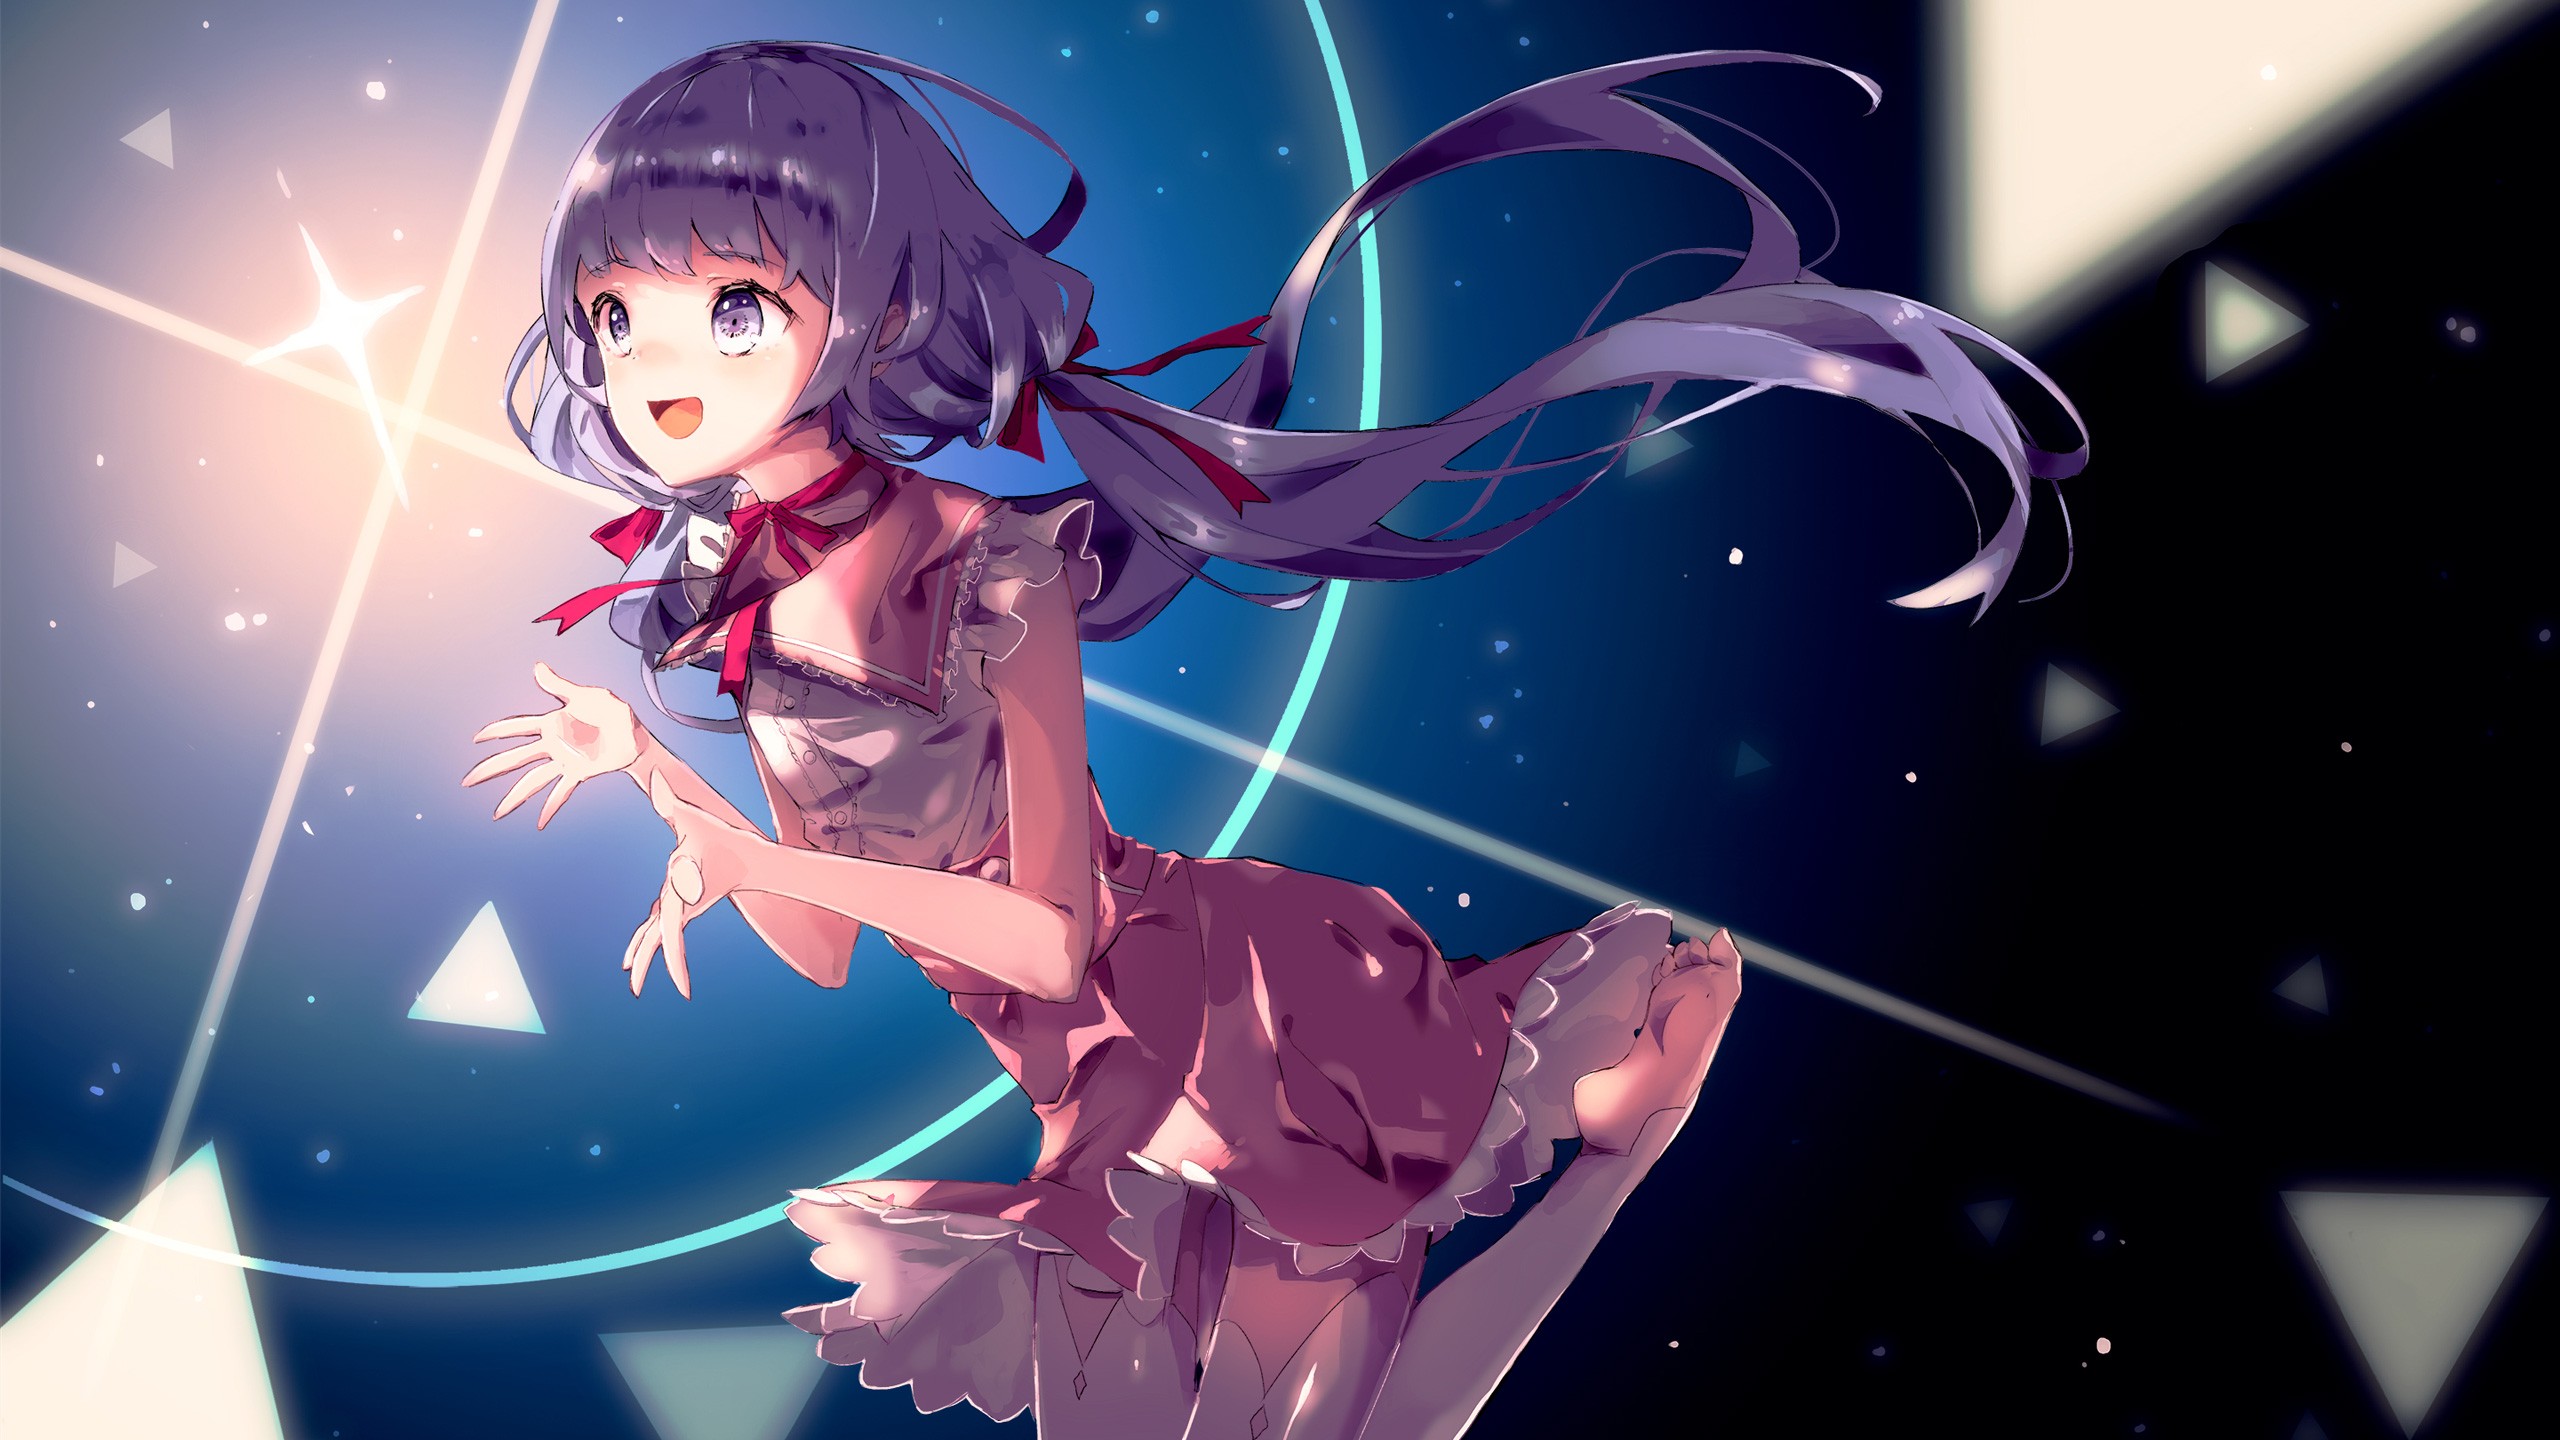 Fantasy Anime Girl Backgrounds - 2560x1440 Wallpaper 